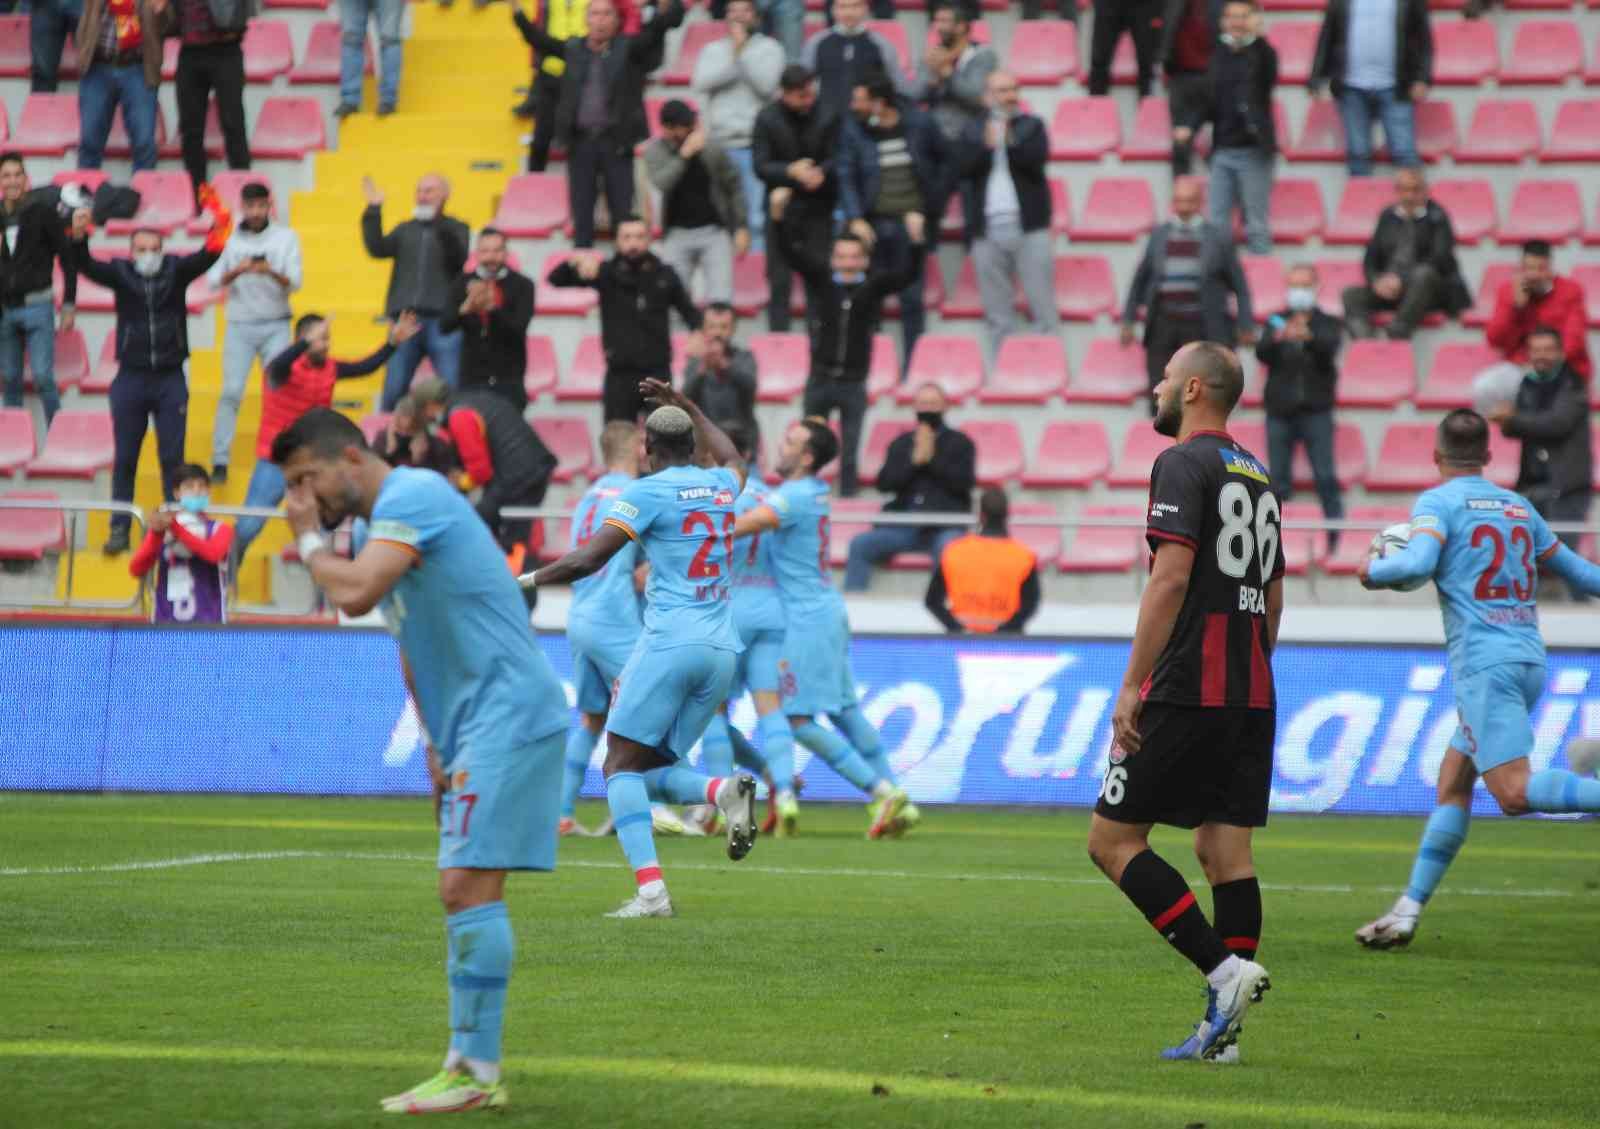 Spor Toto Süper Lig: Kayserispor: 2 - Fatih Karagümrük: 1 (Maç sonucu) #kayseri